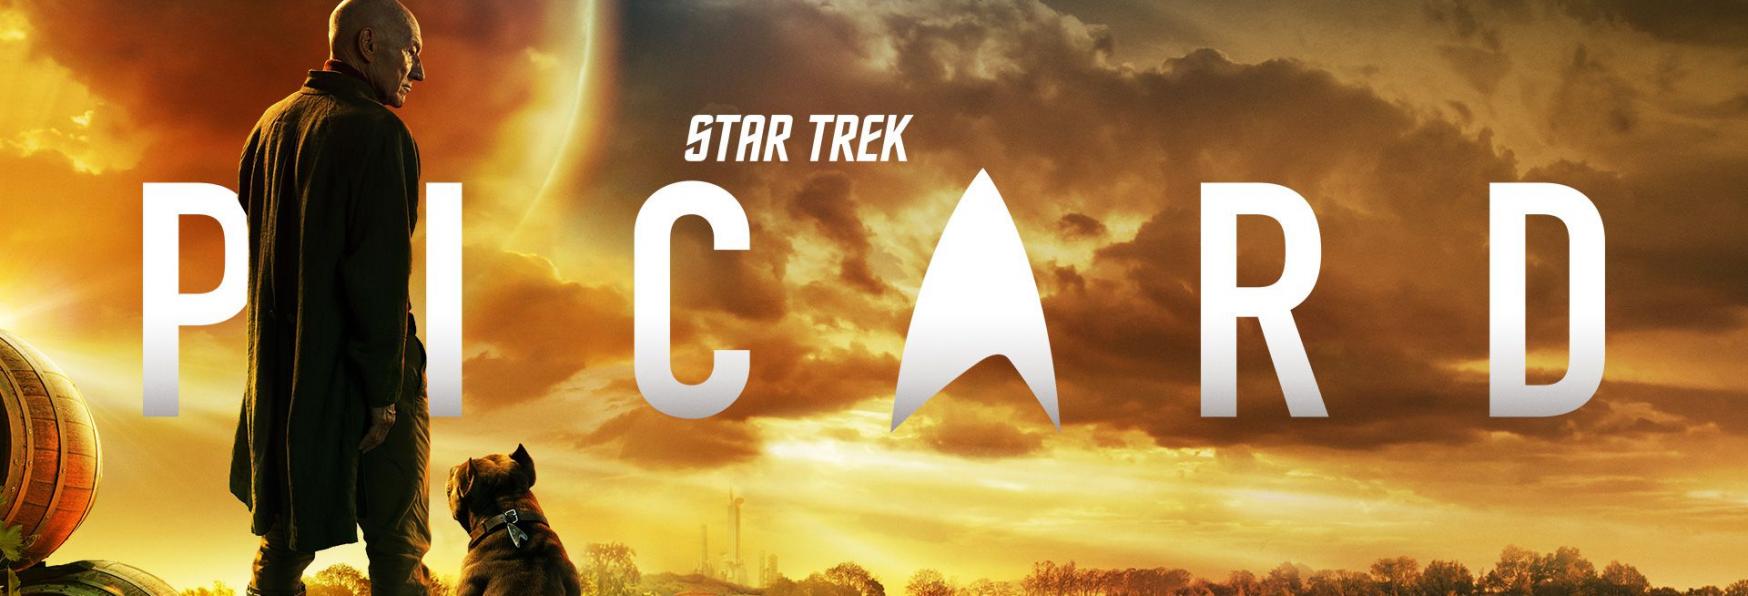 Star Trek: Picard - Recensione del 1° Episodio della tanto attesa Serie TV targata CBS